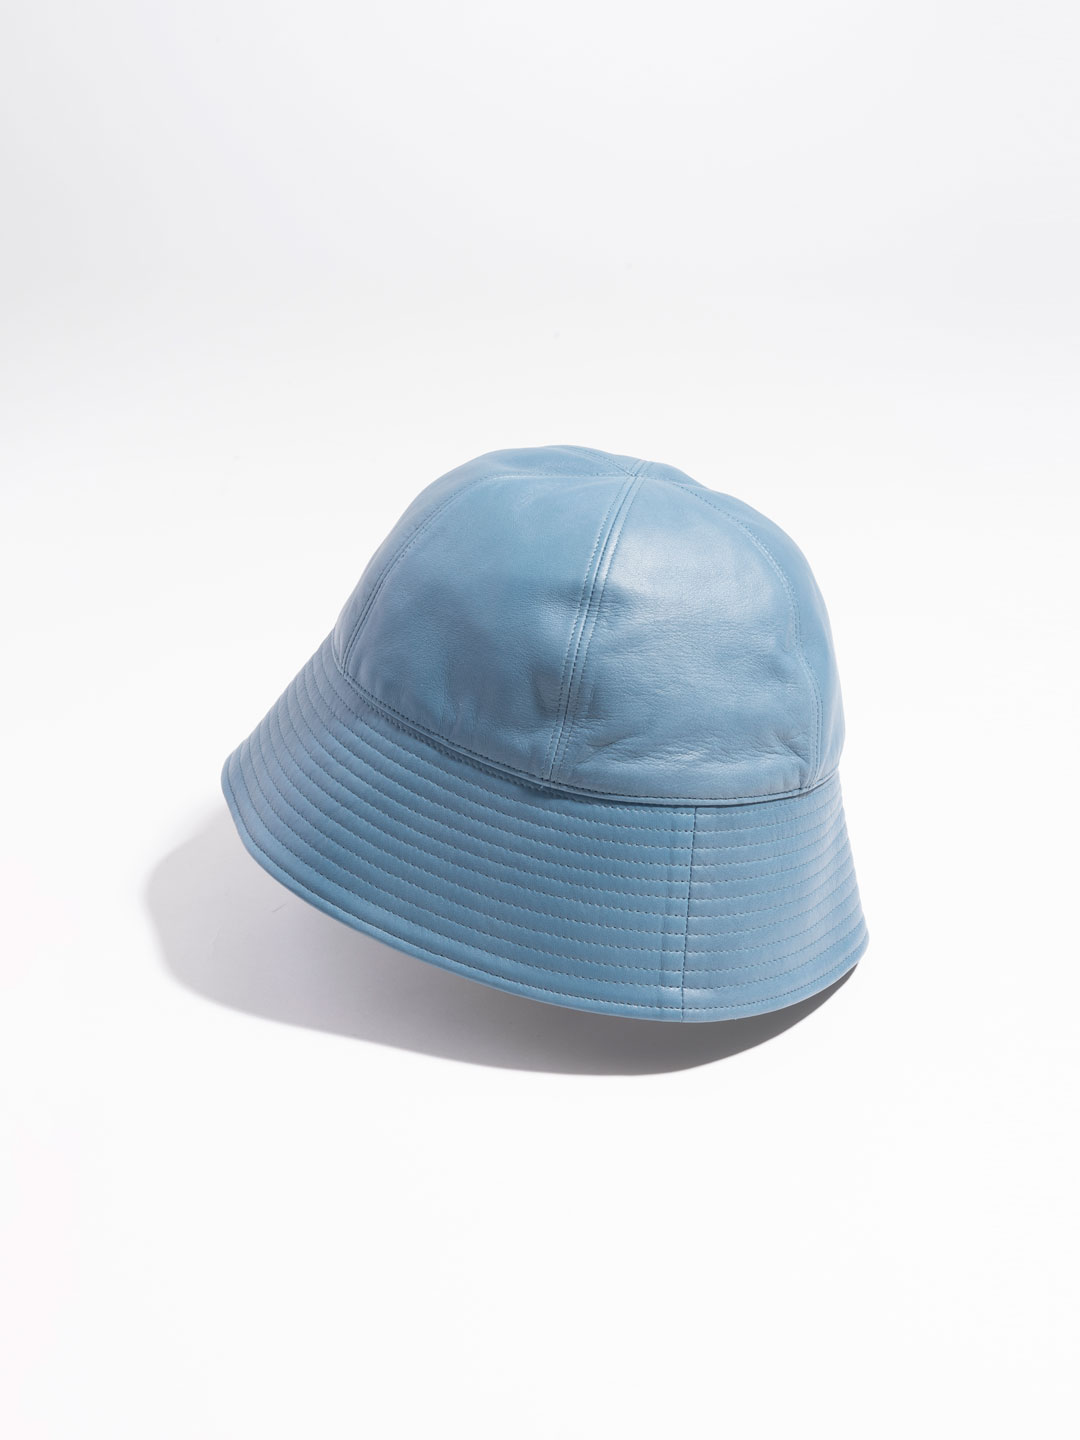 Lamb Leather Sailor Hat - Blue